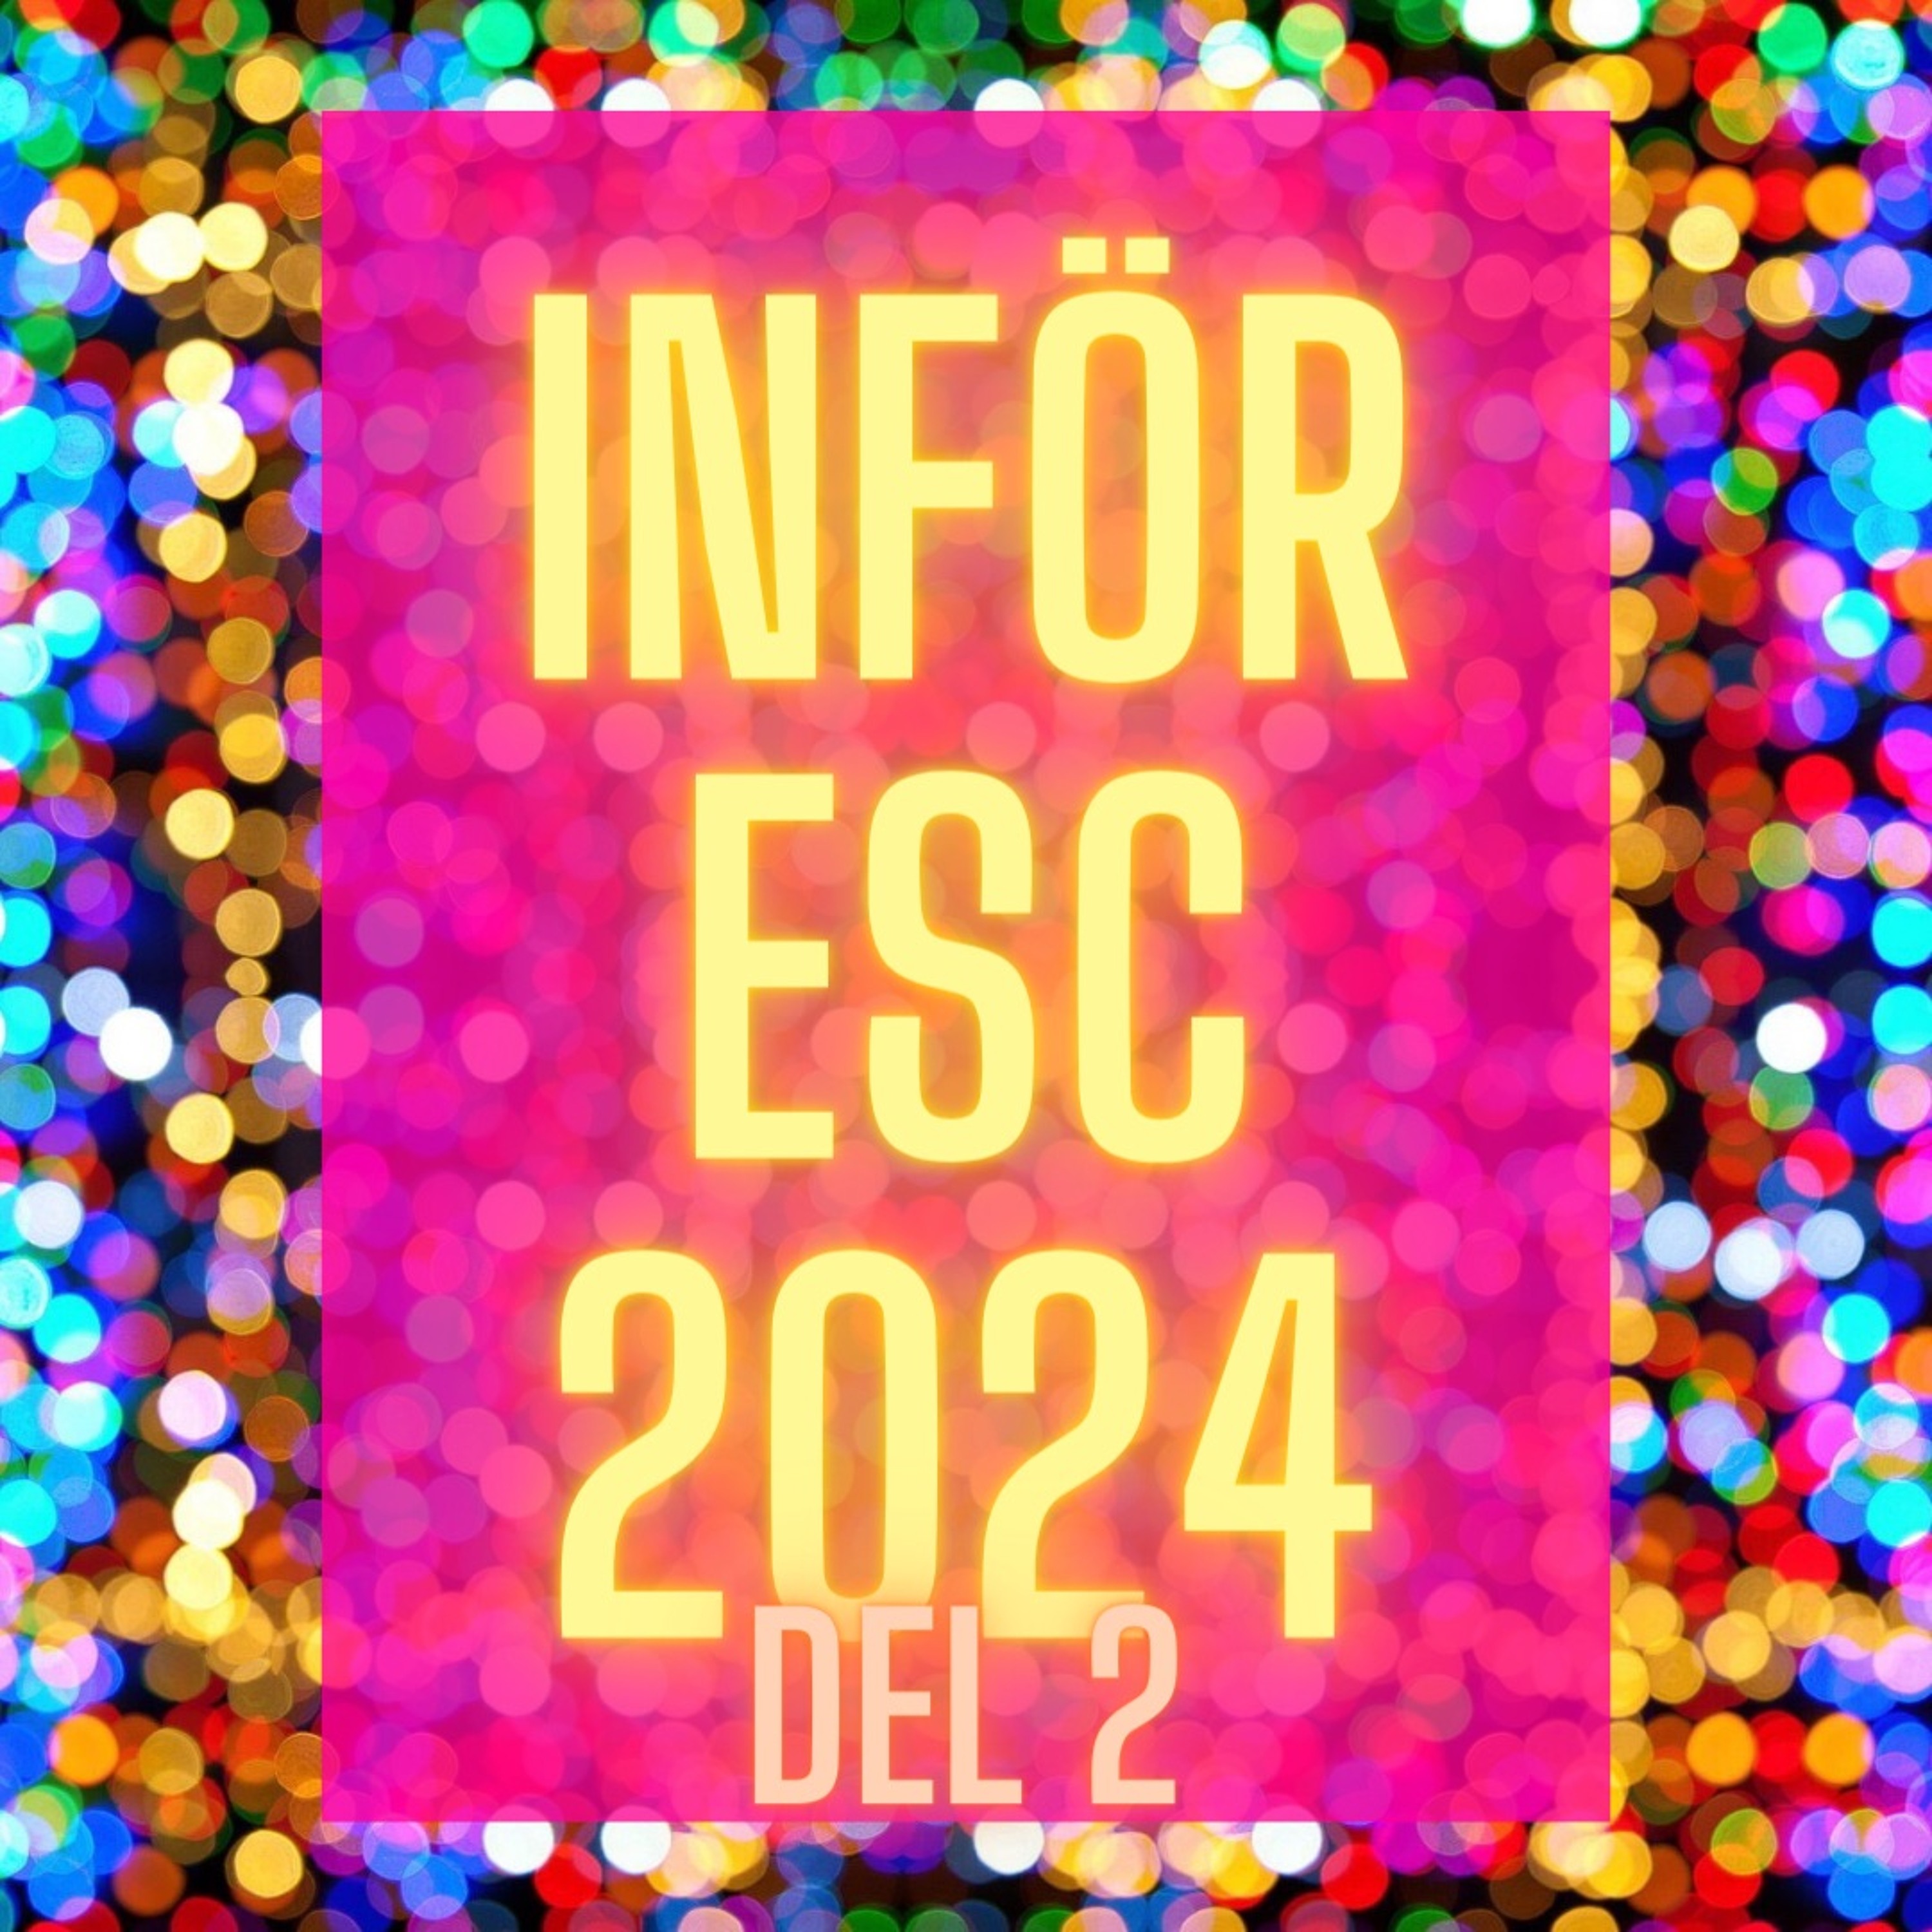 S8A10 - Inför ESC 2024 Del 2